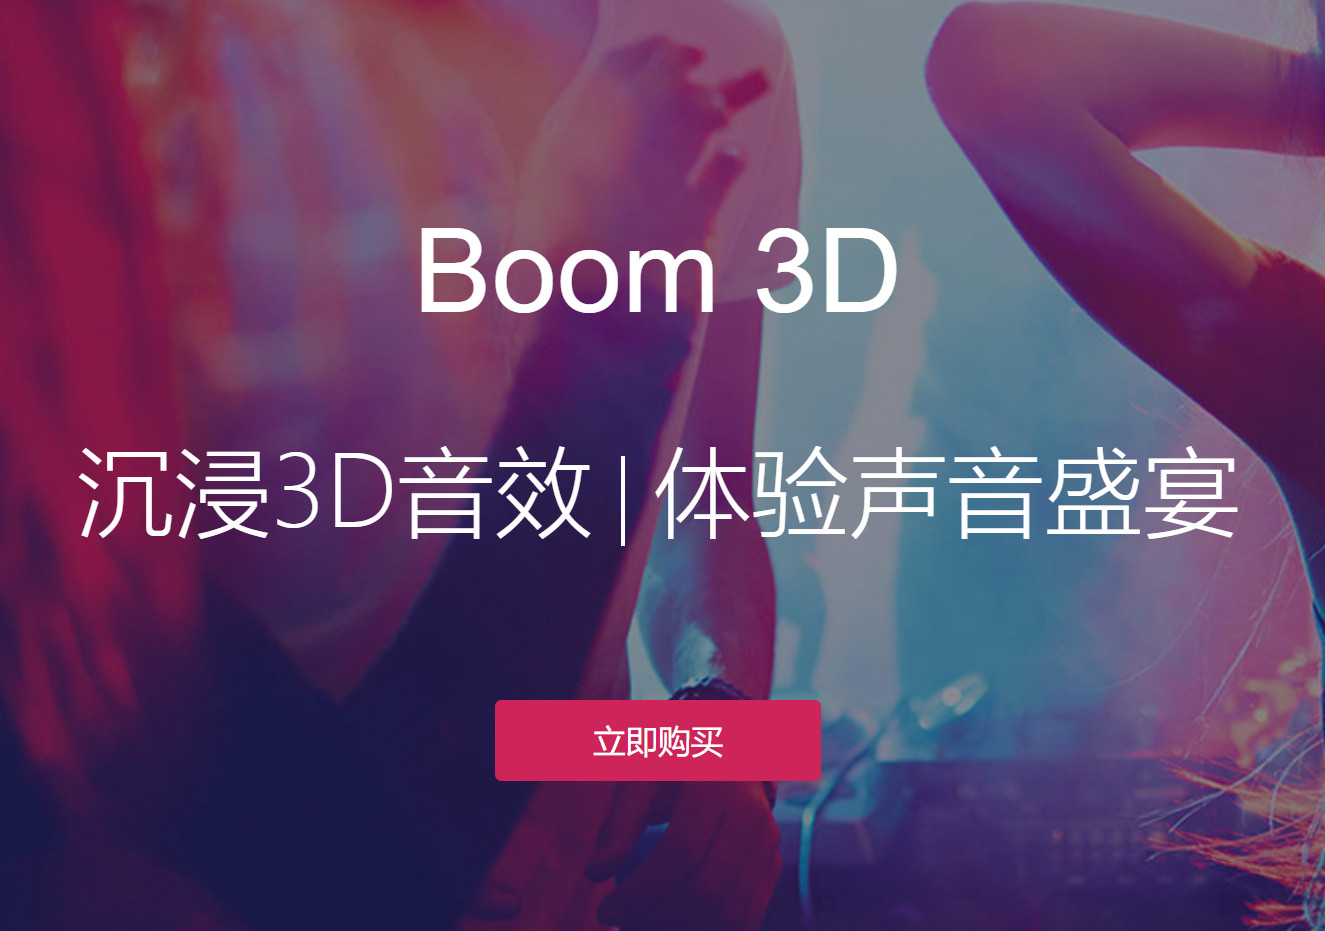 正版Boom 3D丨沉浸3D音效丨体验声音盛宴 永久授权(优惠价99元)